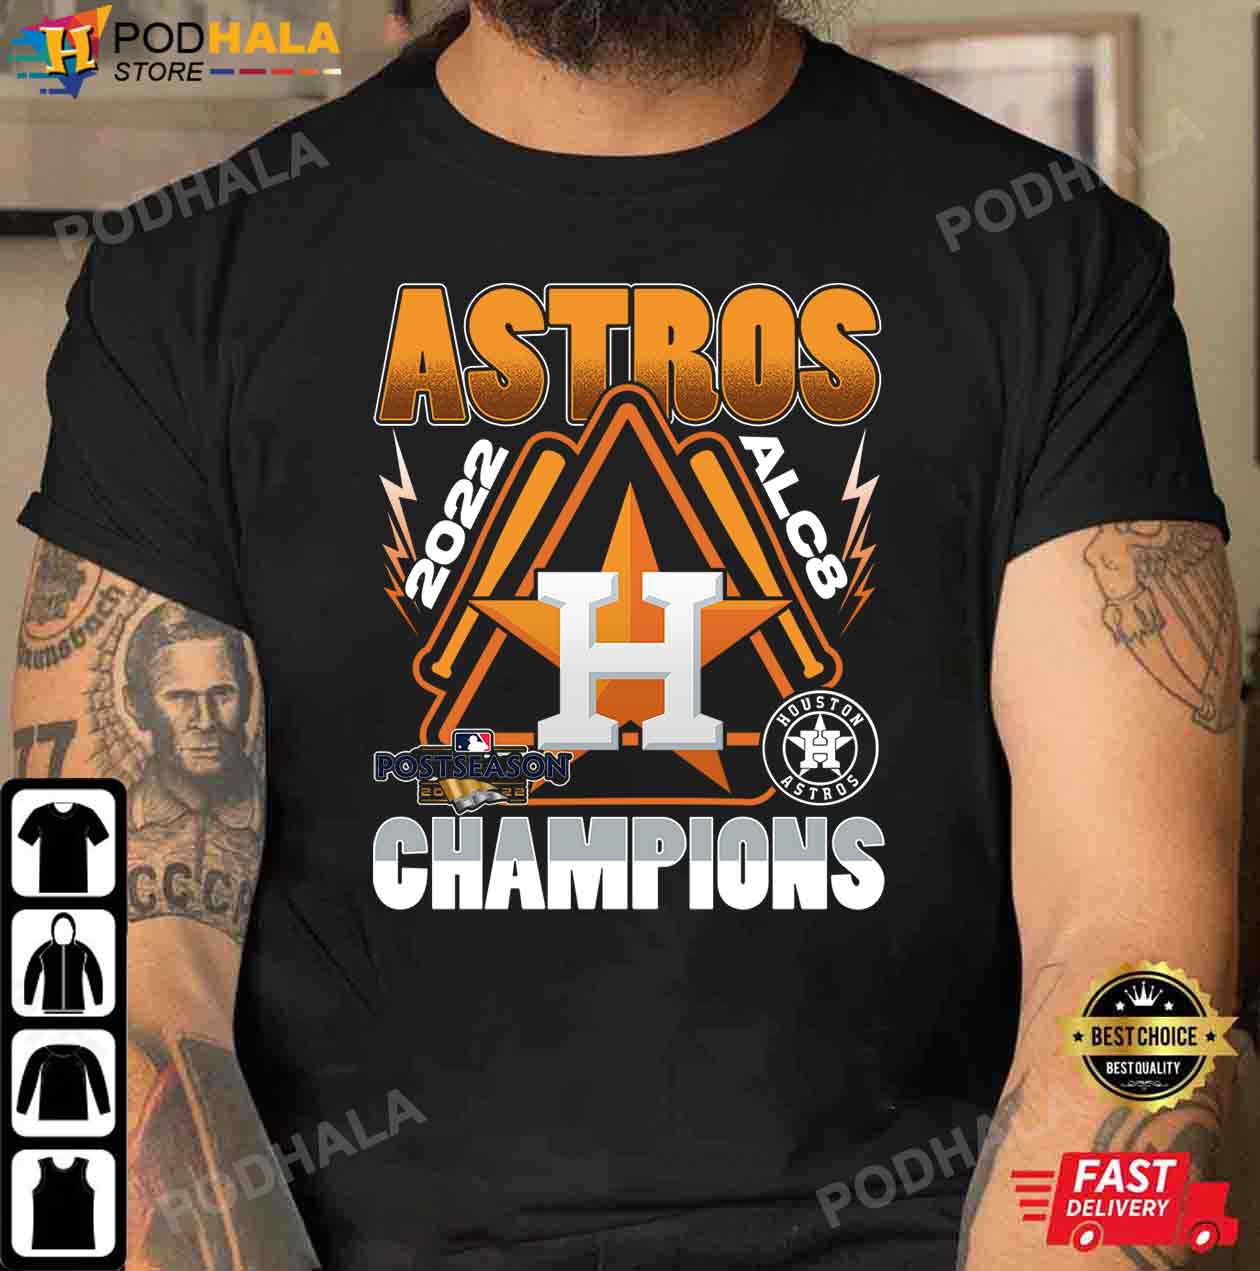 unique houston astros shirts